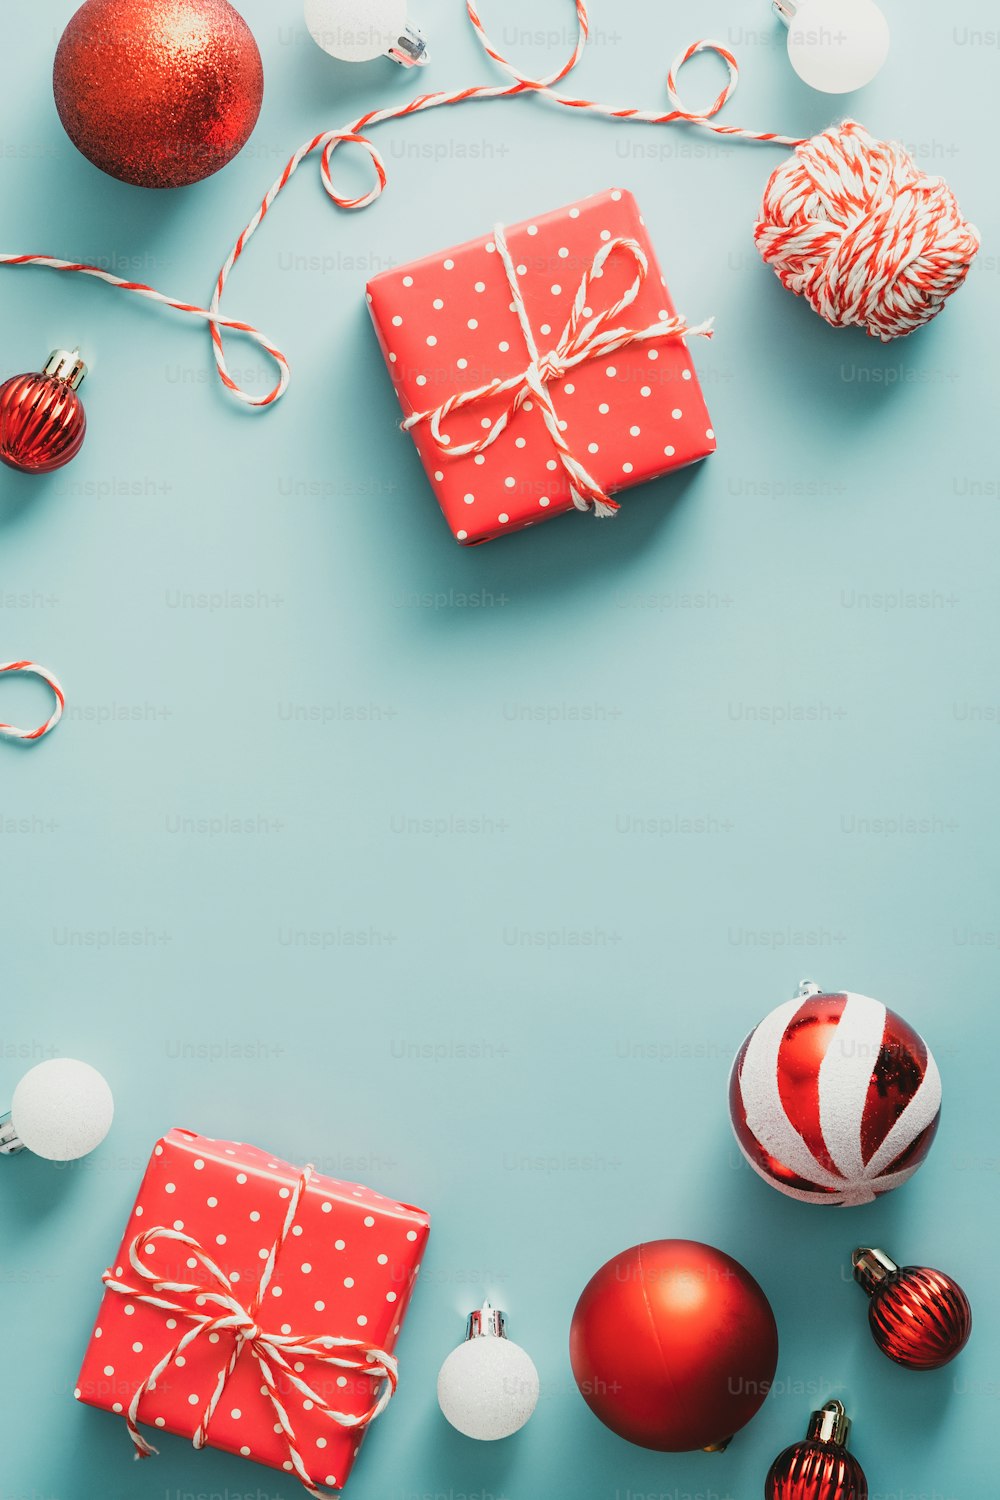 Composition de Noël Vintage à plat avec des cadeaux, des boules rouges et blanches, un ruban sur fond vert. Vue de dessus avec espace de copie. Joyeux Noël et concept du Nouvel An.